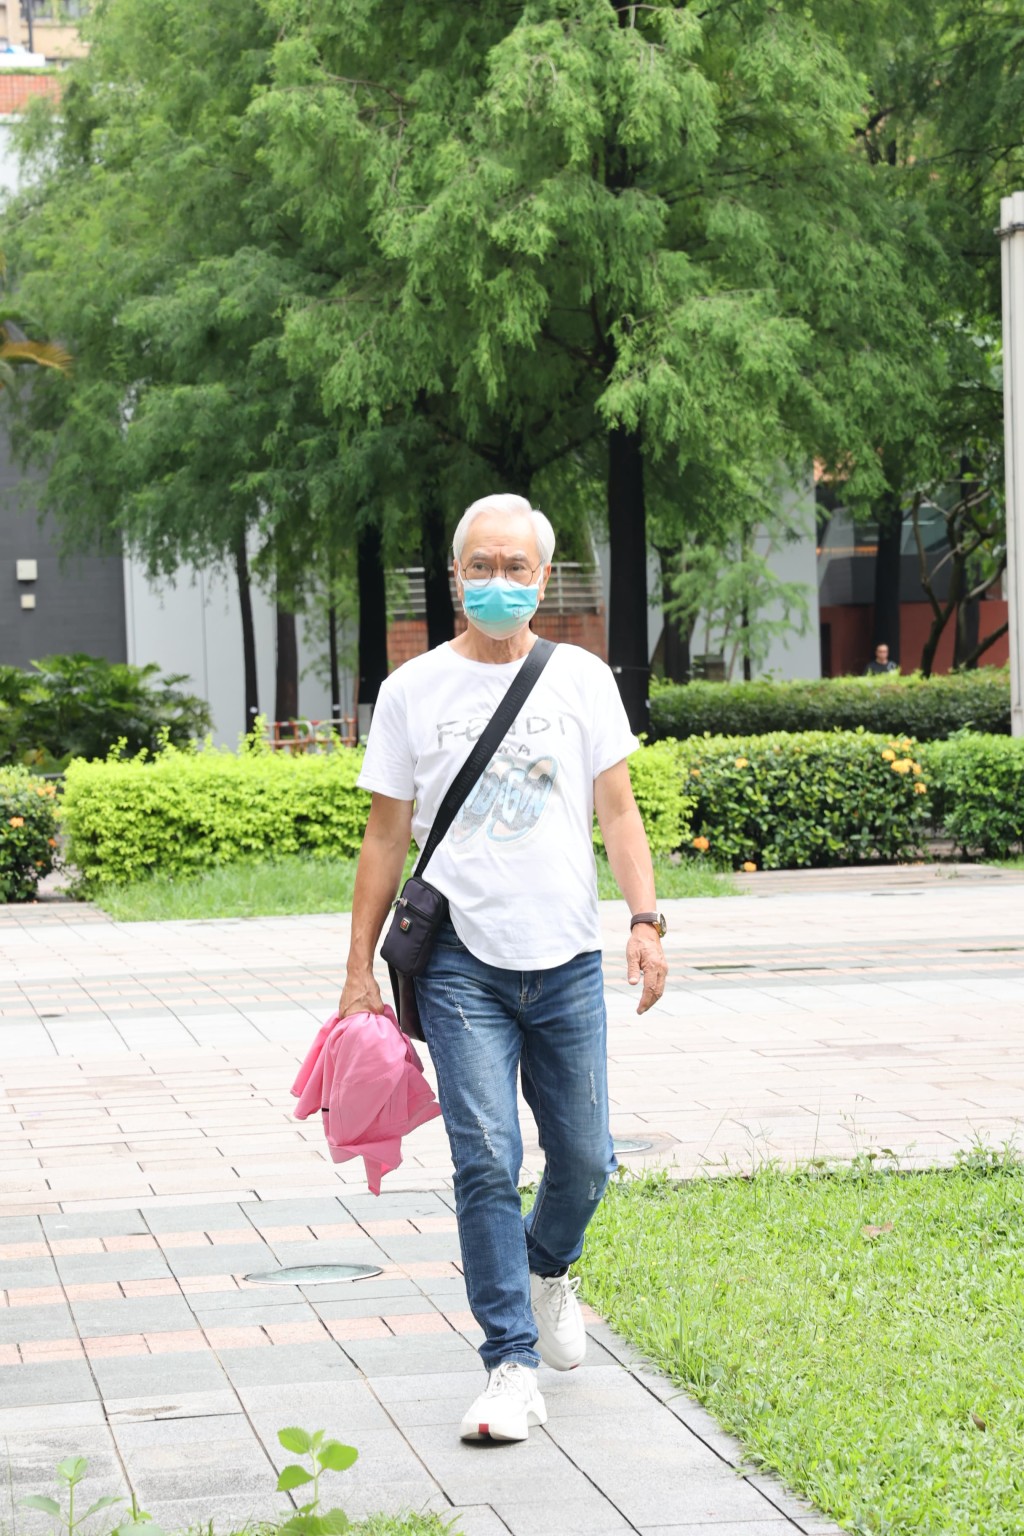 戴上口罩兼身穿「FENDI」白色T恤、拿著粉红色衣服的李龙基到达法院。